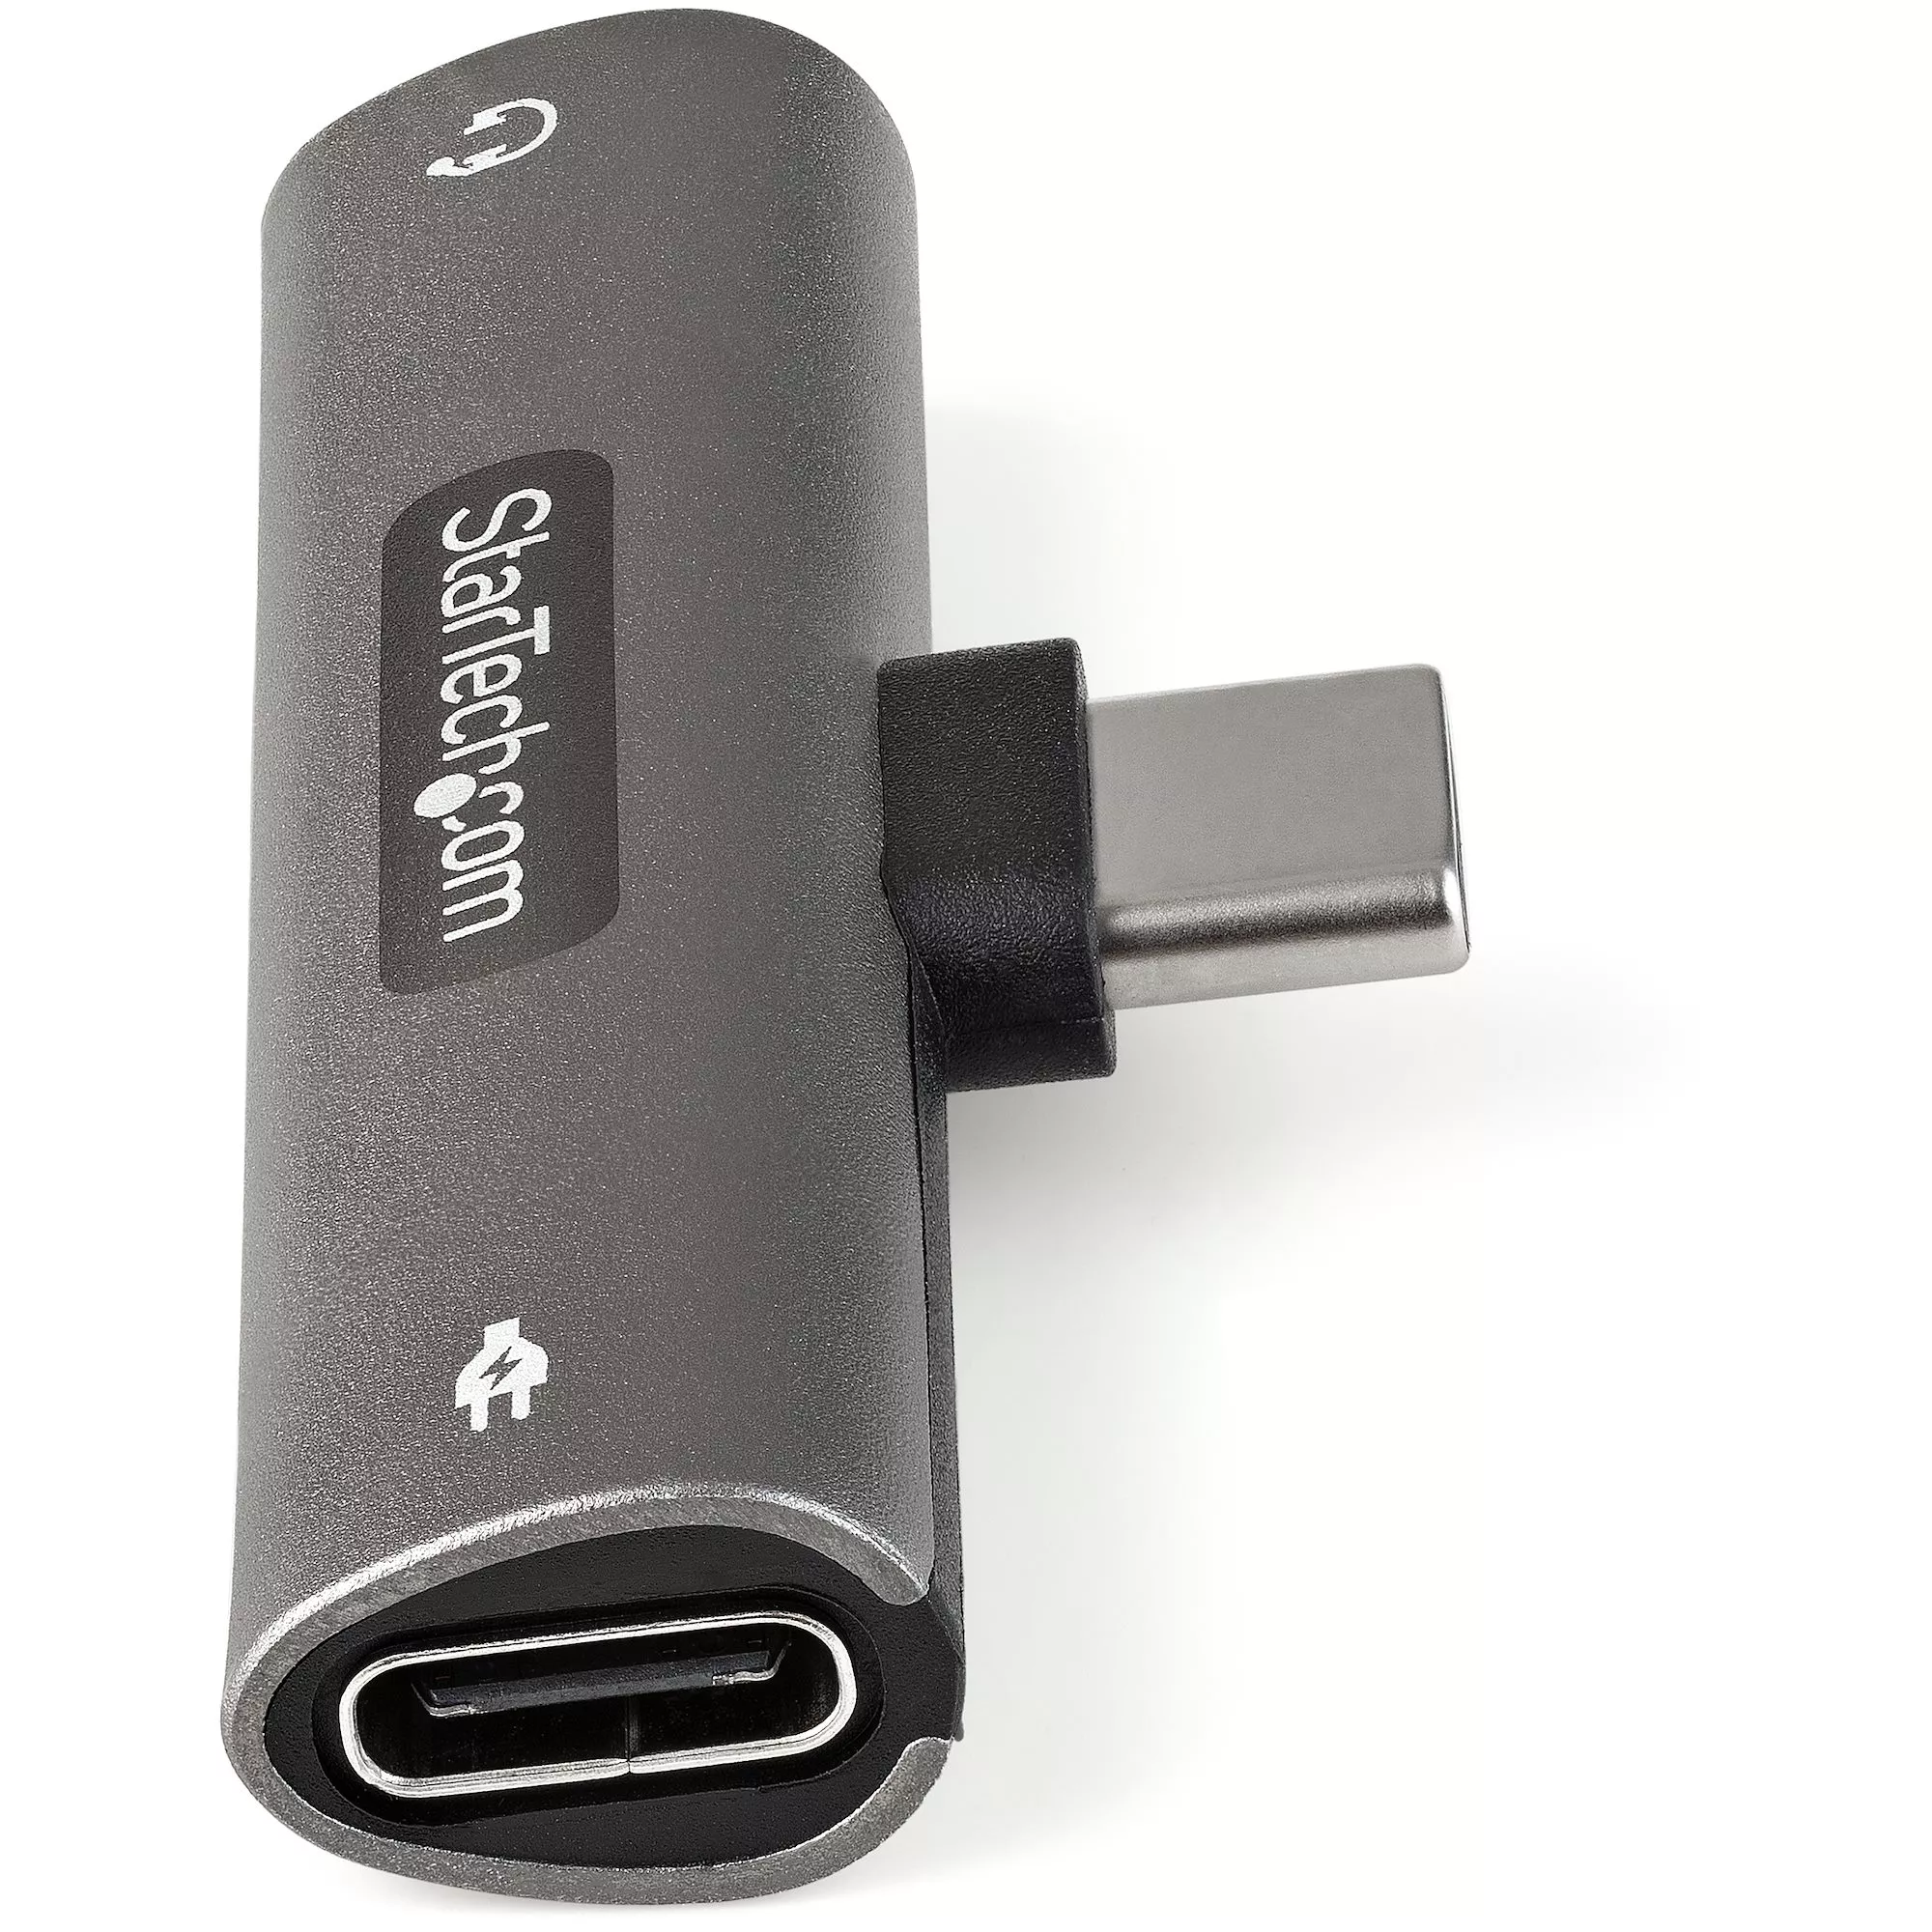 Vente StarTech.com Adaptateur USB-C Audio & Chargeur StarTech.com au meilleur prix - visuel 4